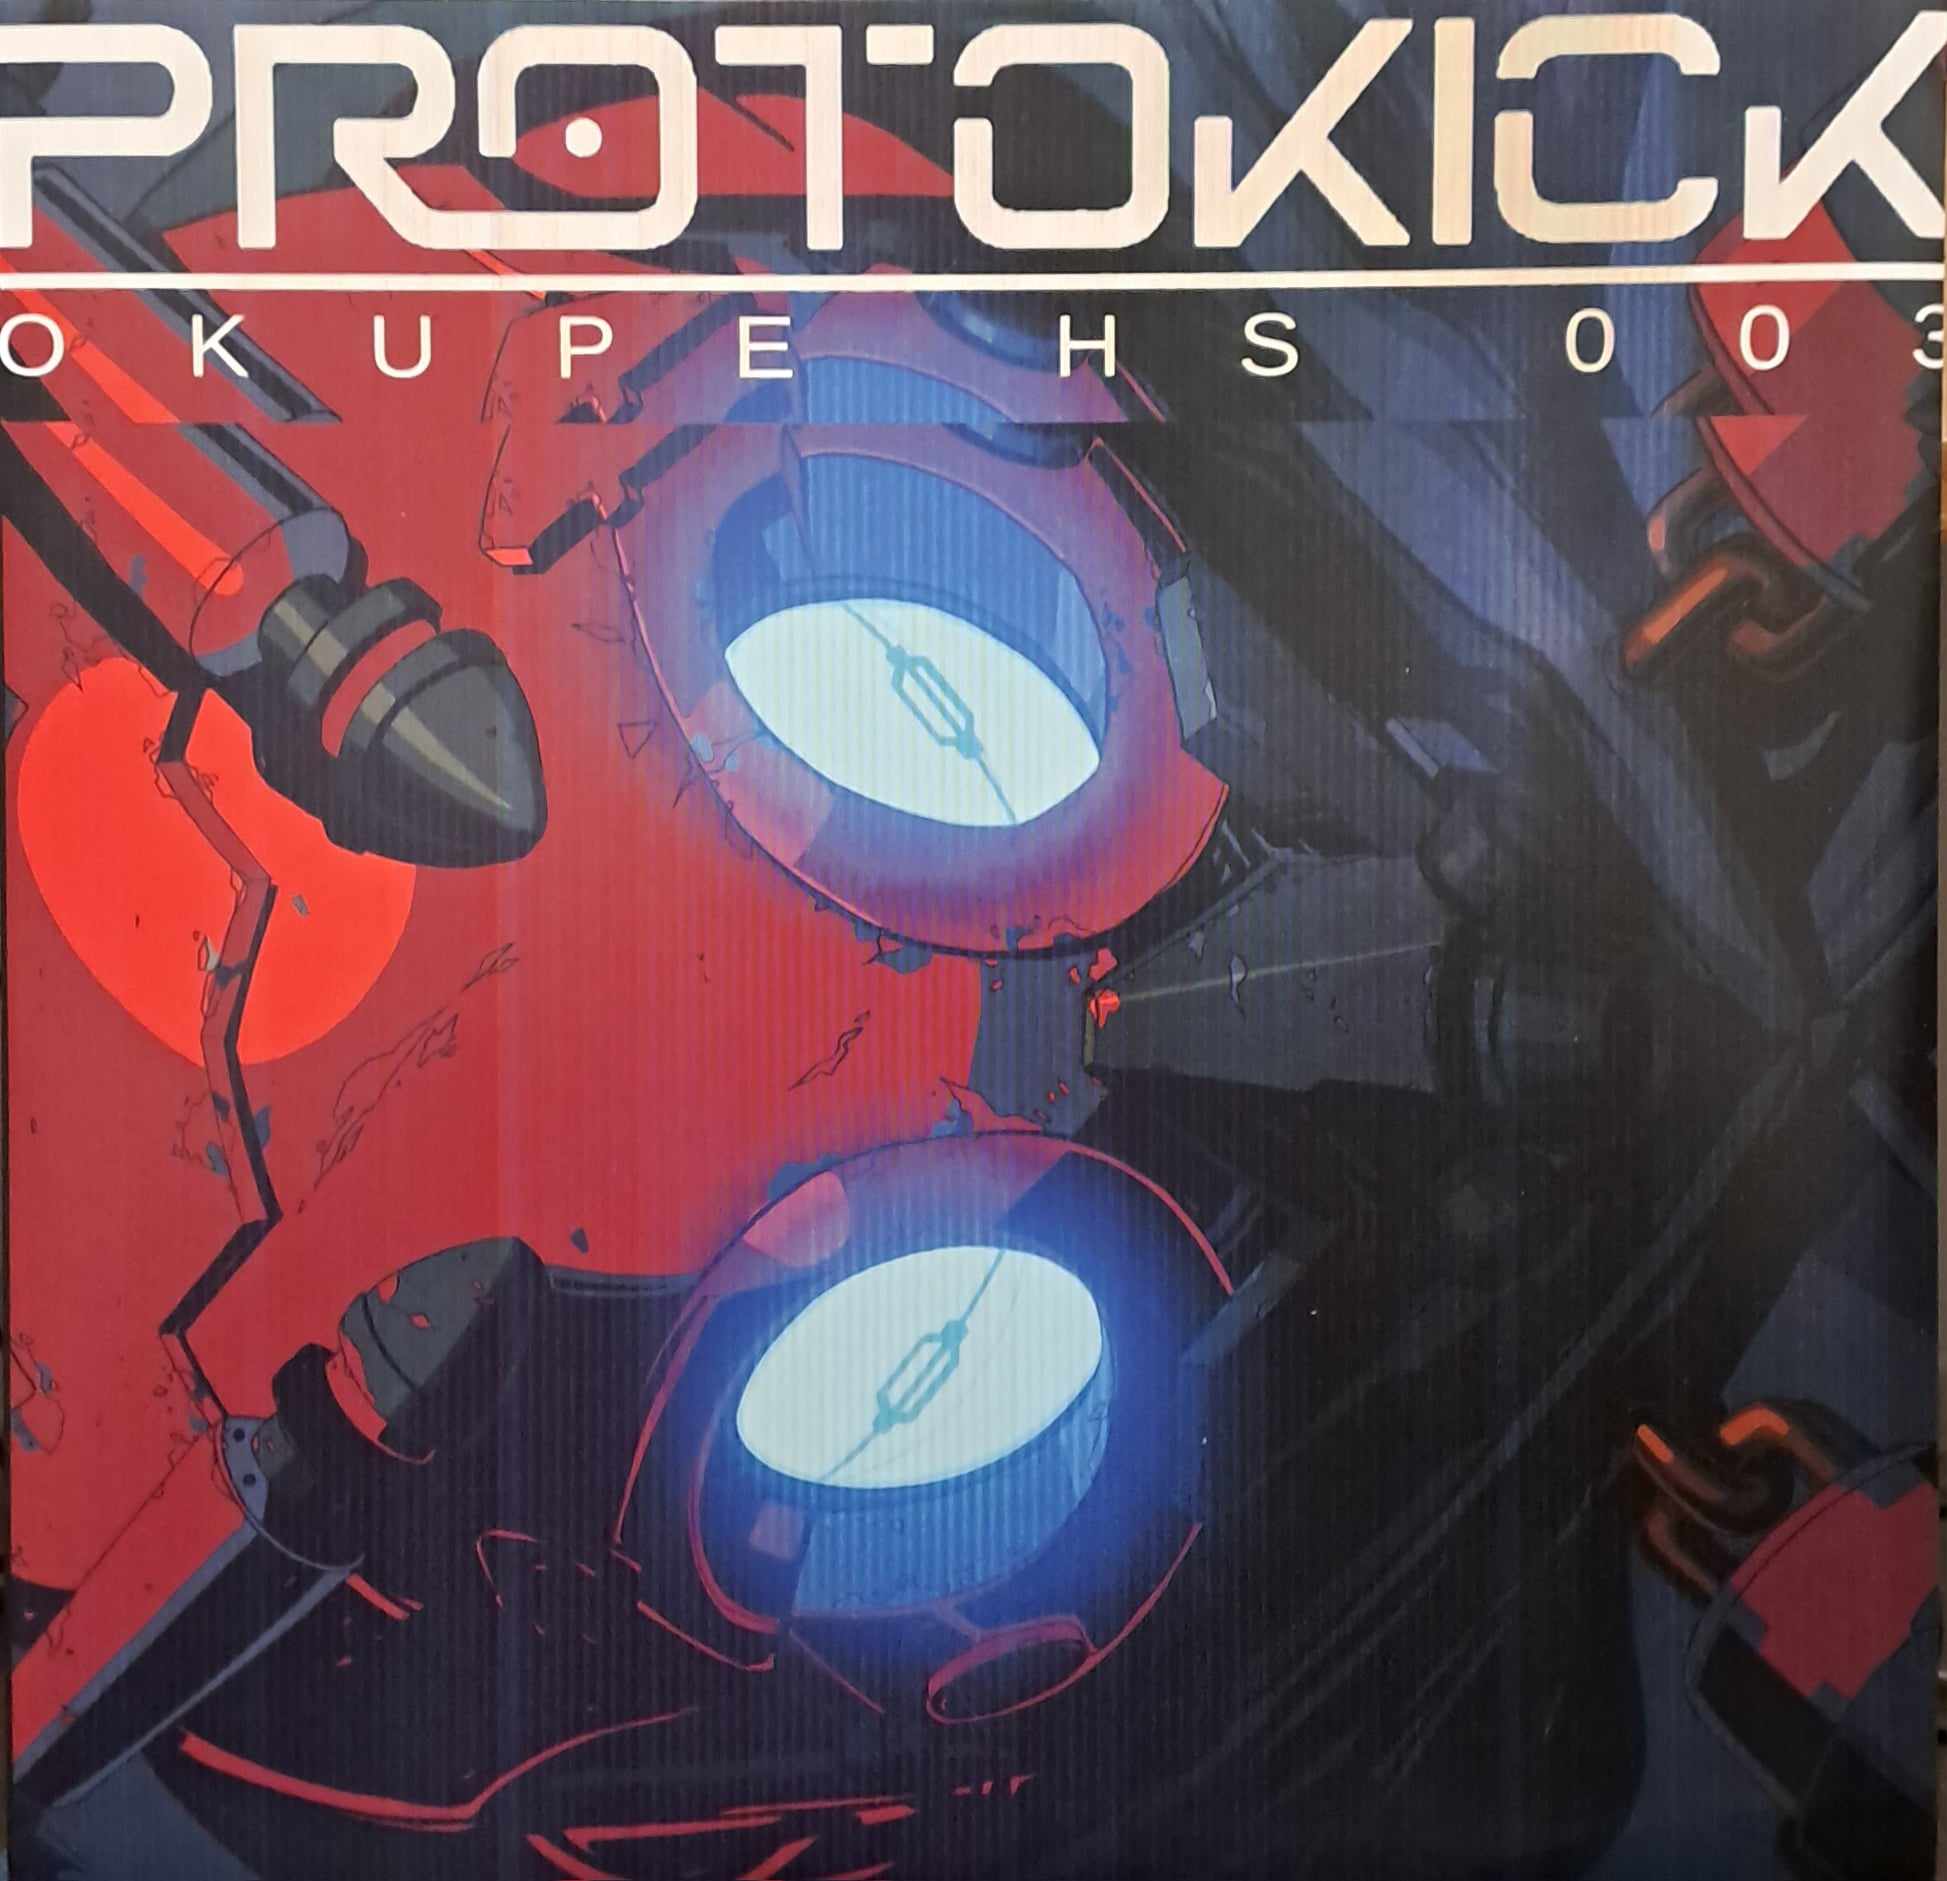 Okupe HS 03 (toute dernière copie en stock) - vinyle freetekno